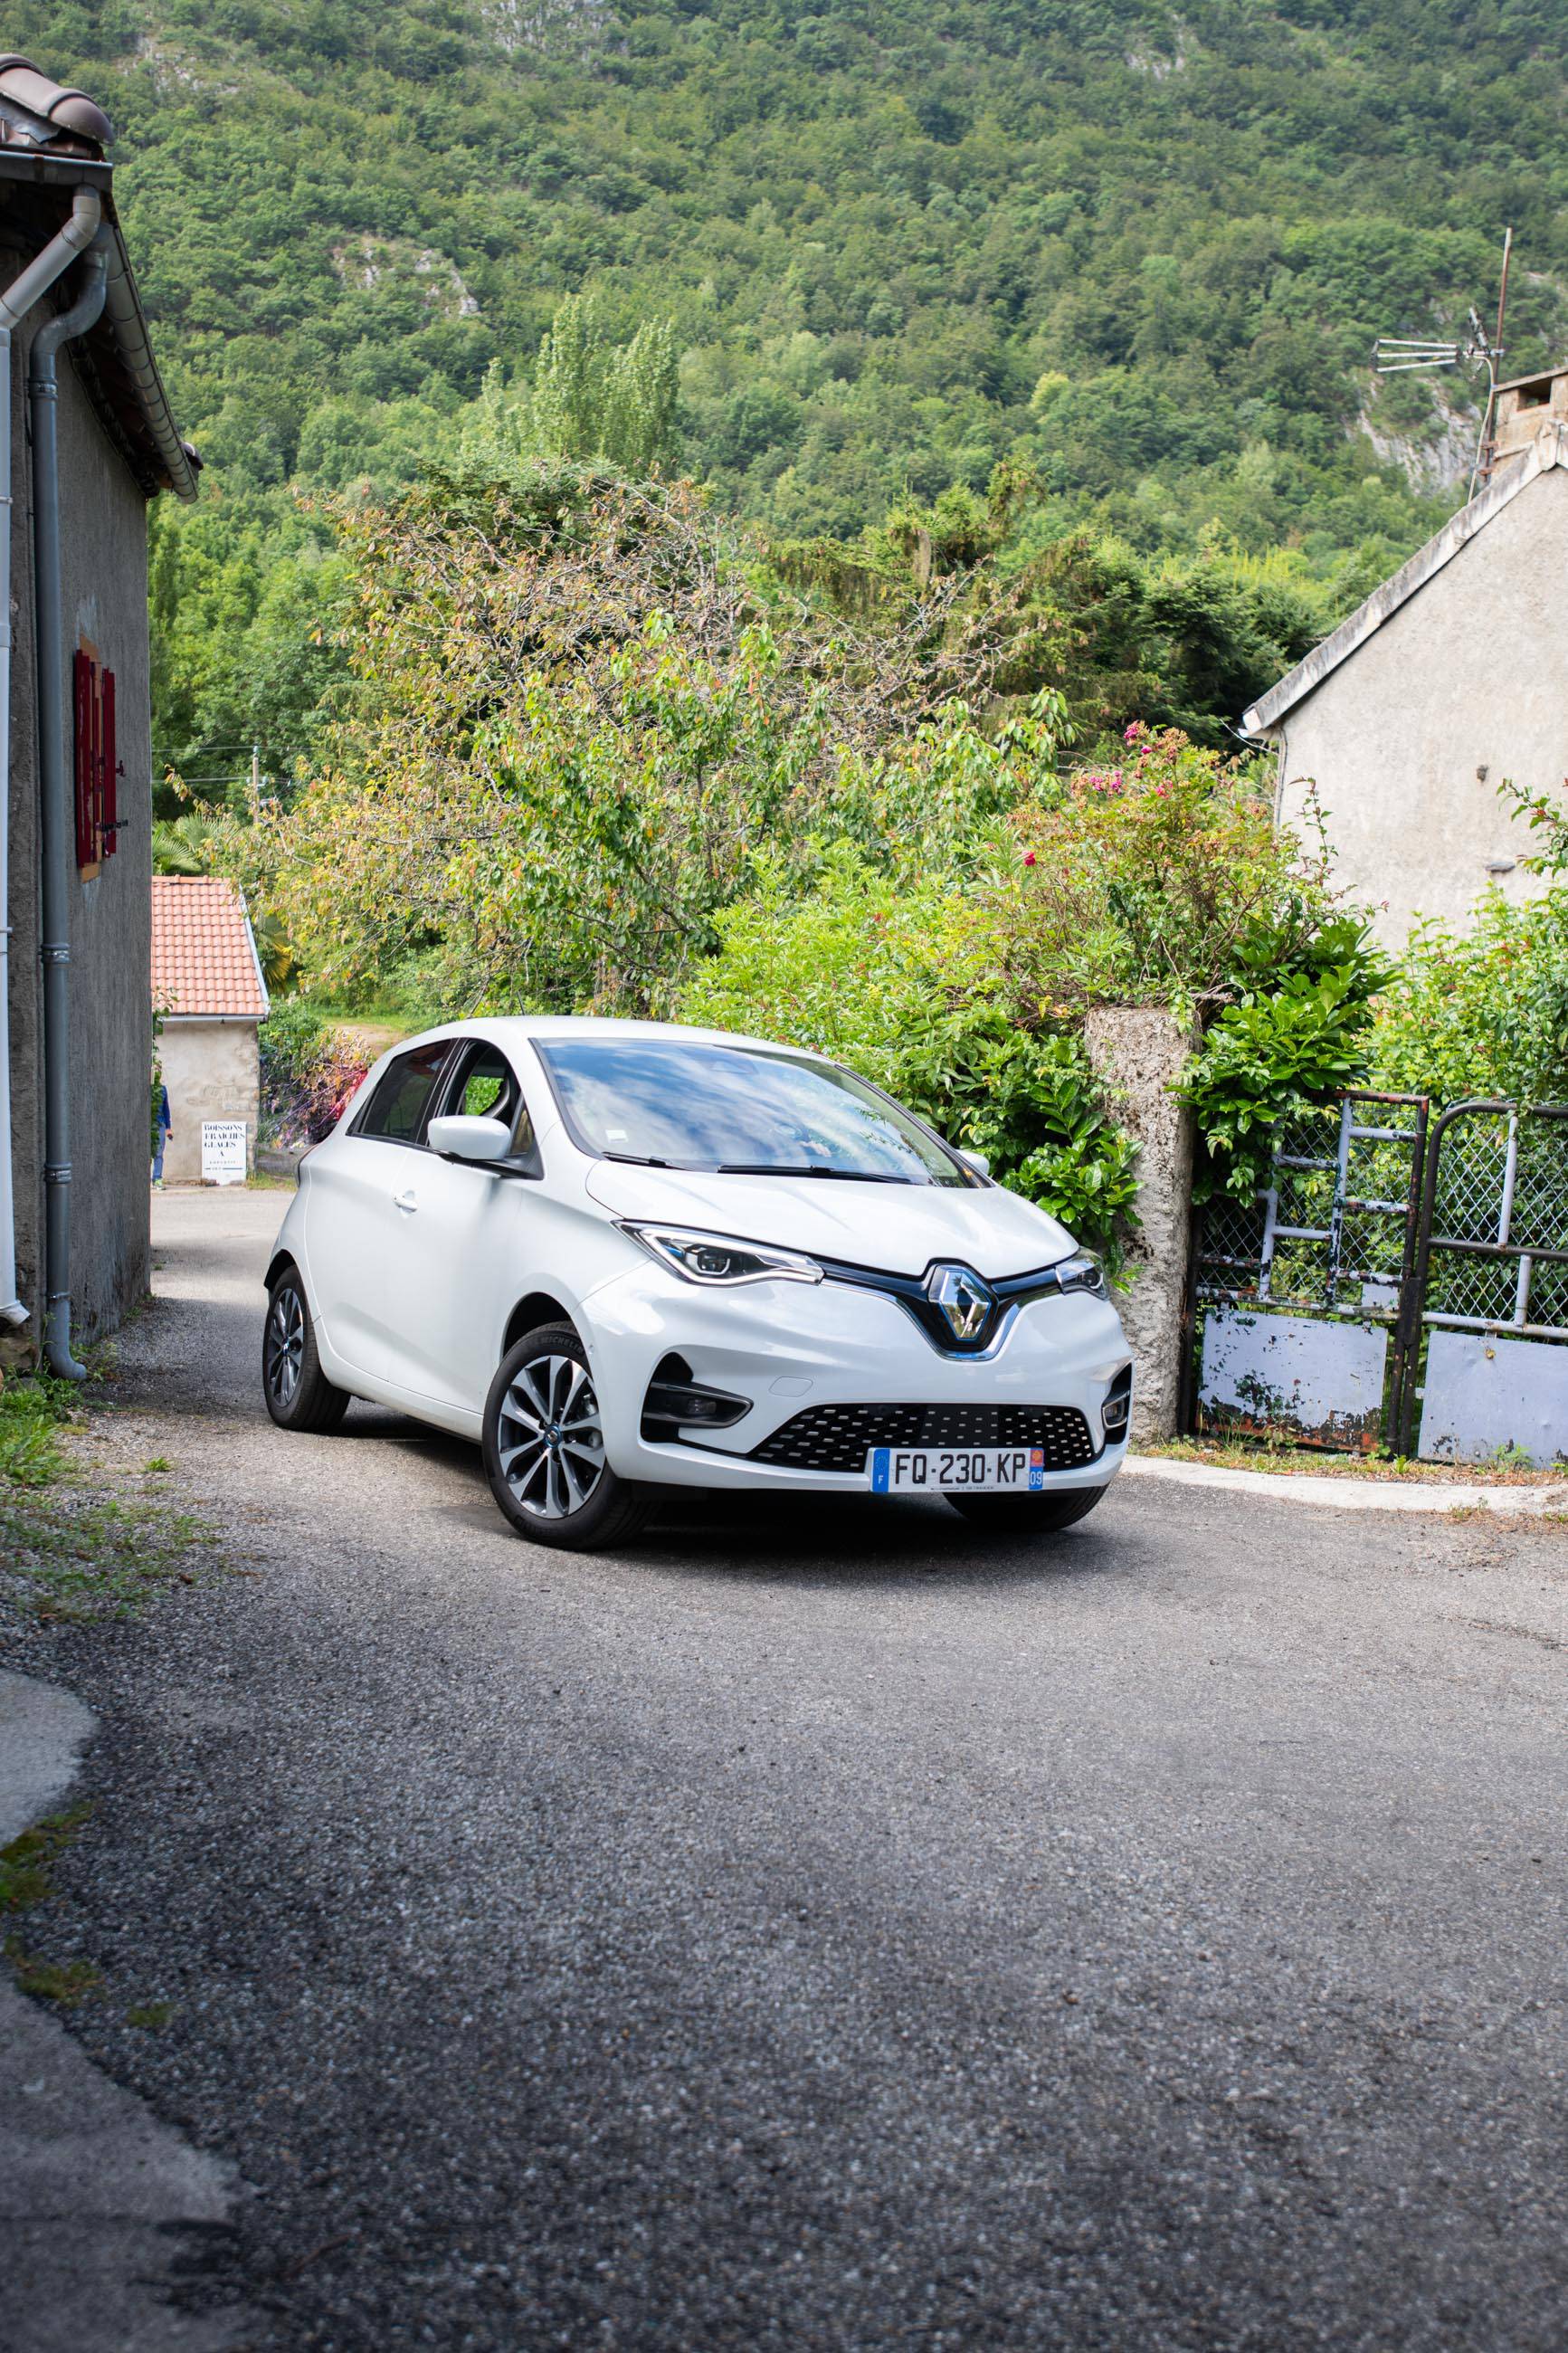 Svi stanovnici mjesta Appy u Francuskoj dobit će Renault Zoe